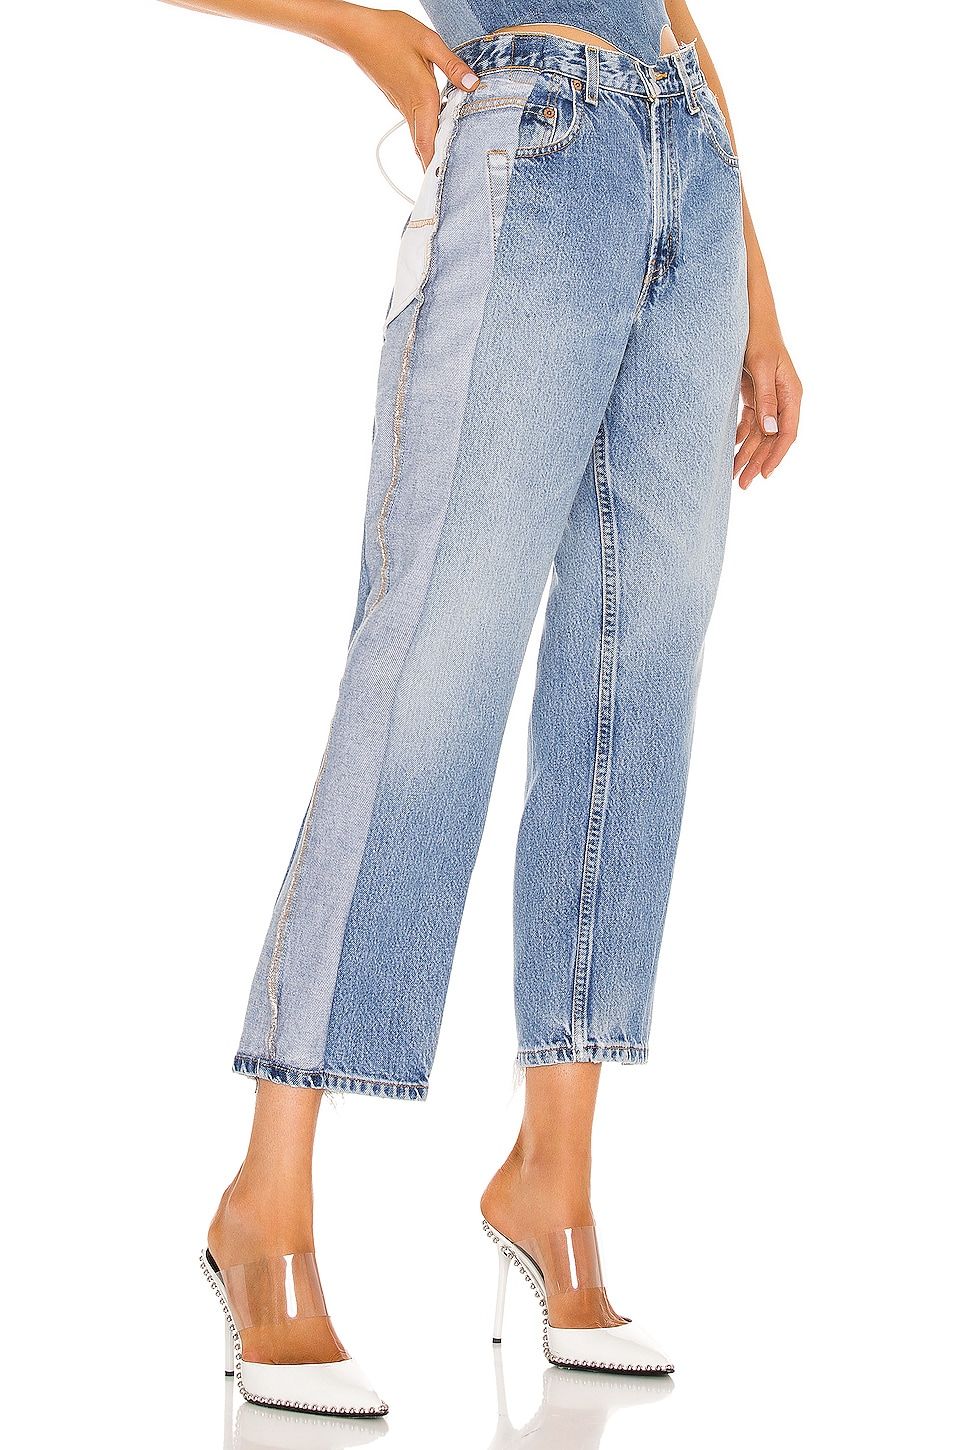 Coogi Vintage Denim Jeans - 32